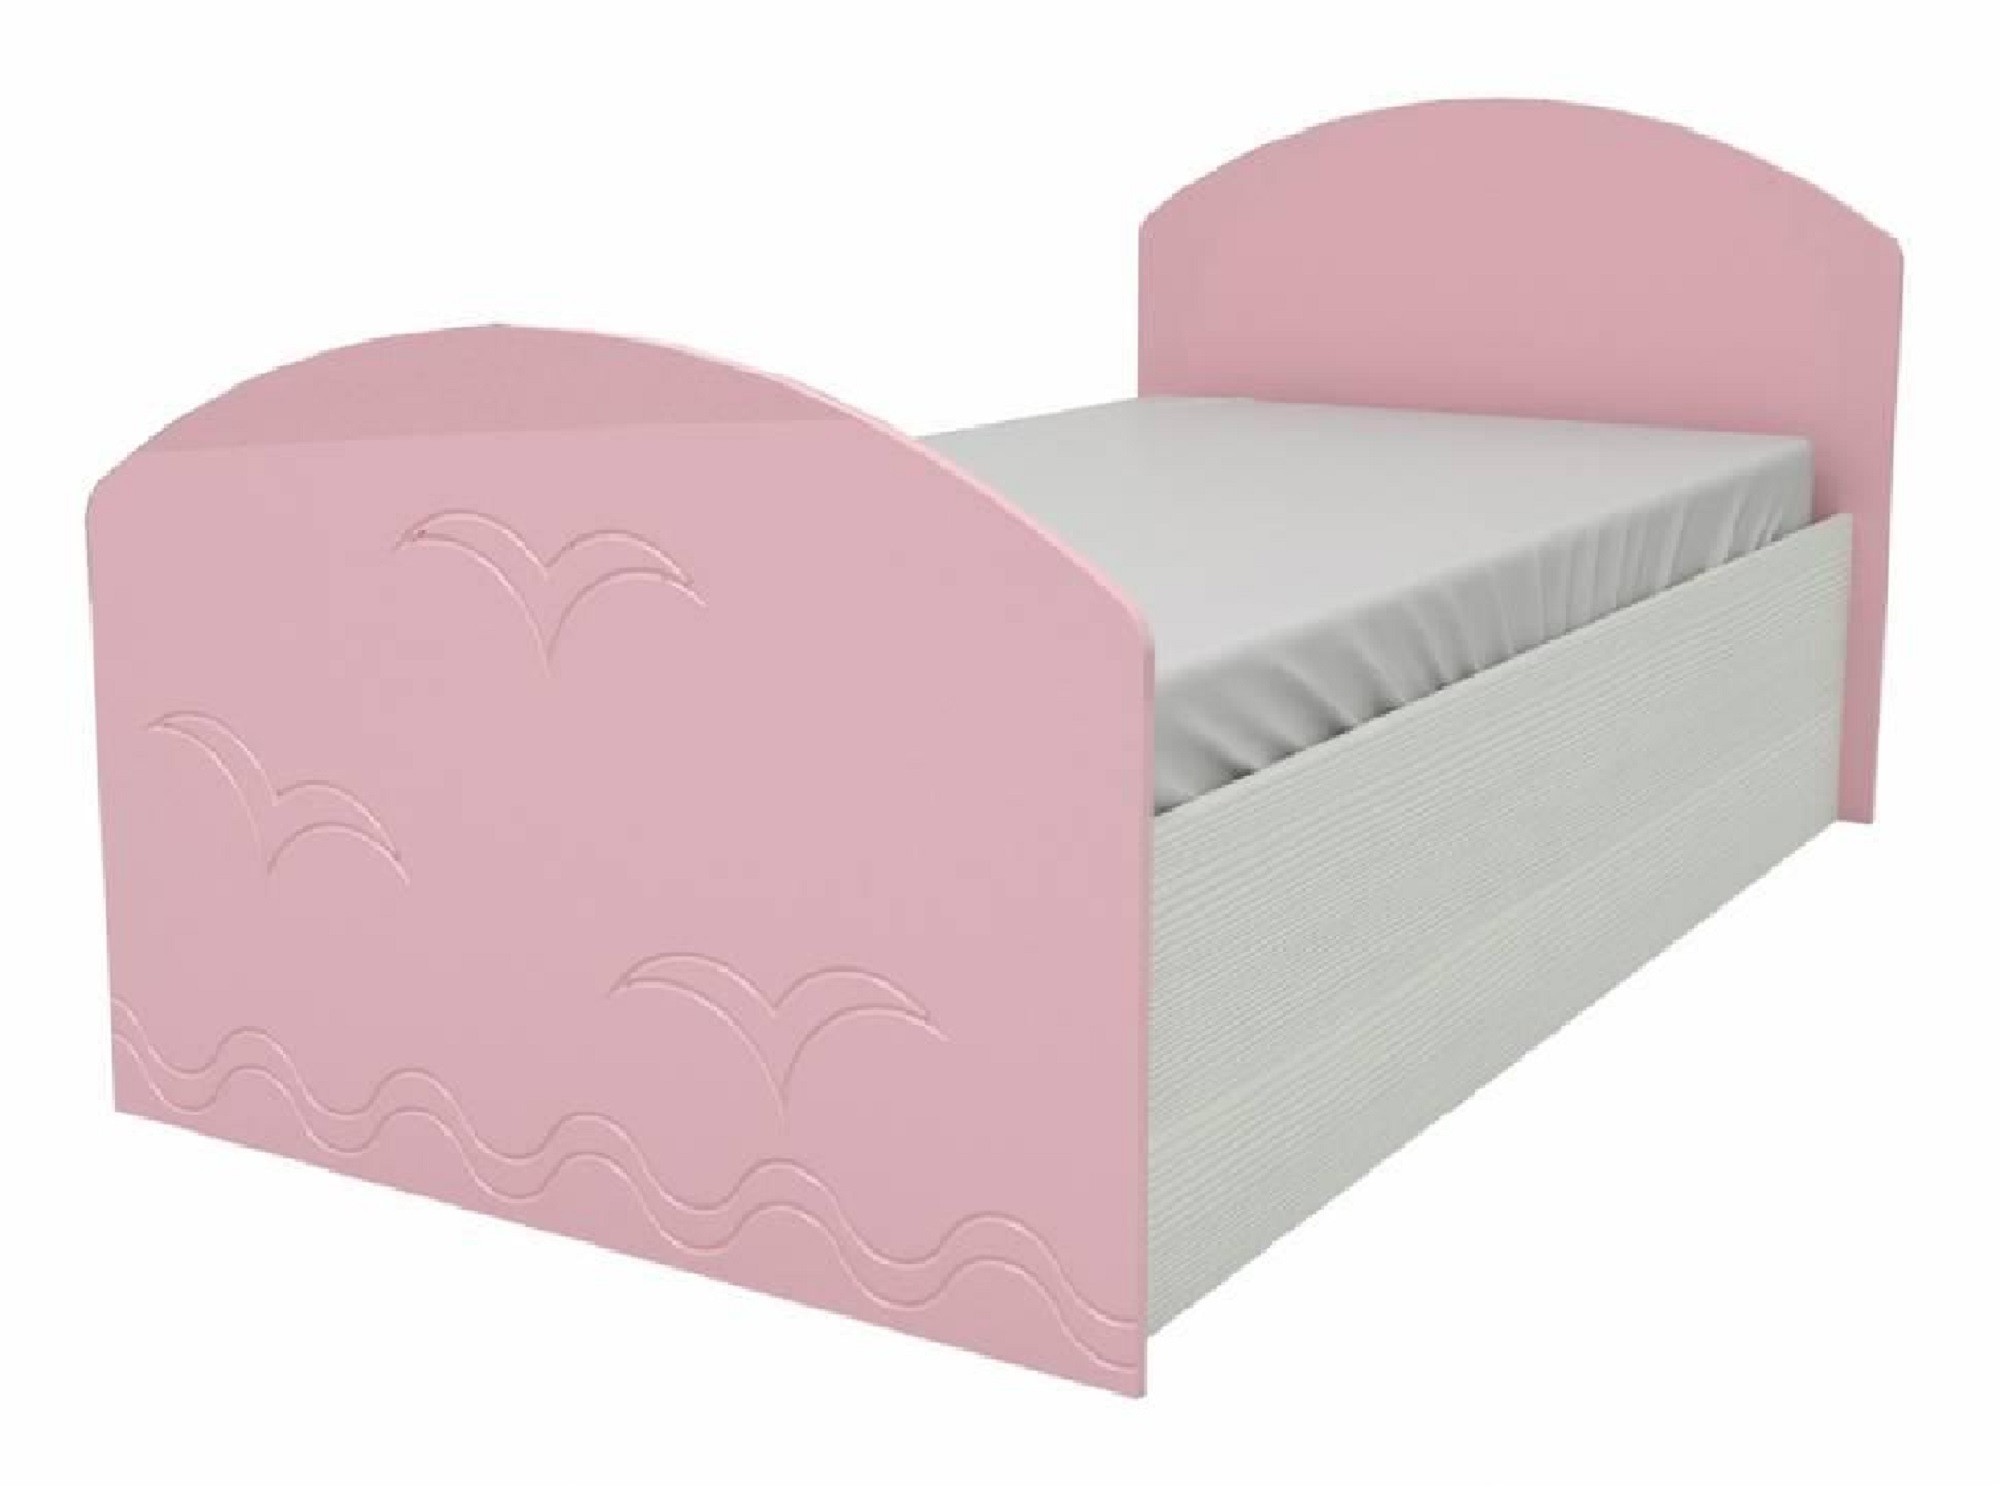 Юниор-2 Детская кровать 80, металлик (Розовый металлик, Дуб белёный) Розовый металлик, МДФ, ЛДСП юниор 2 детская кровать 80 металлик фиолетовый металлик дуб белёный дуб белёный мдф лдсп